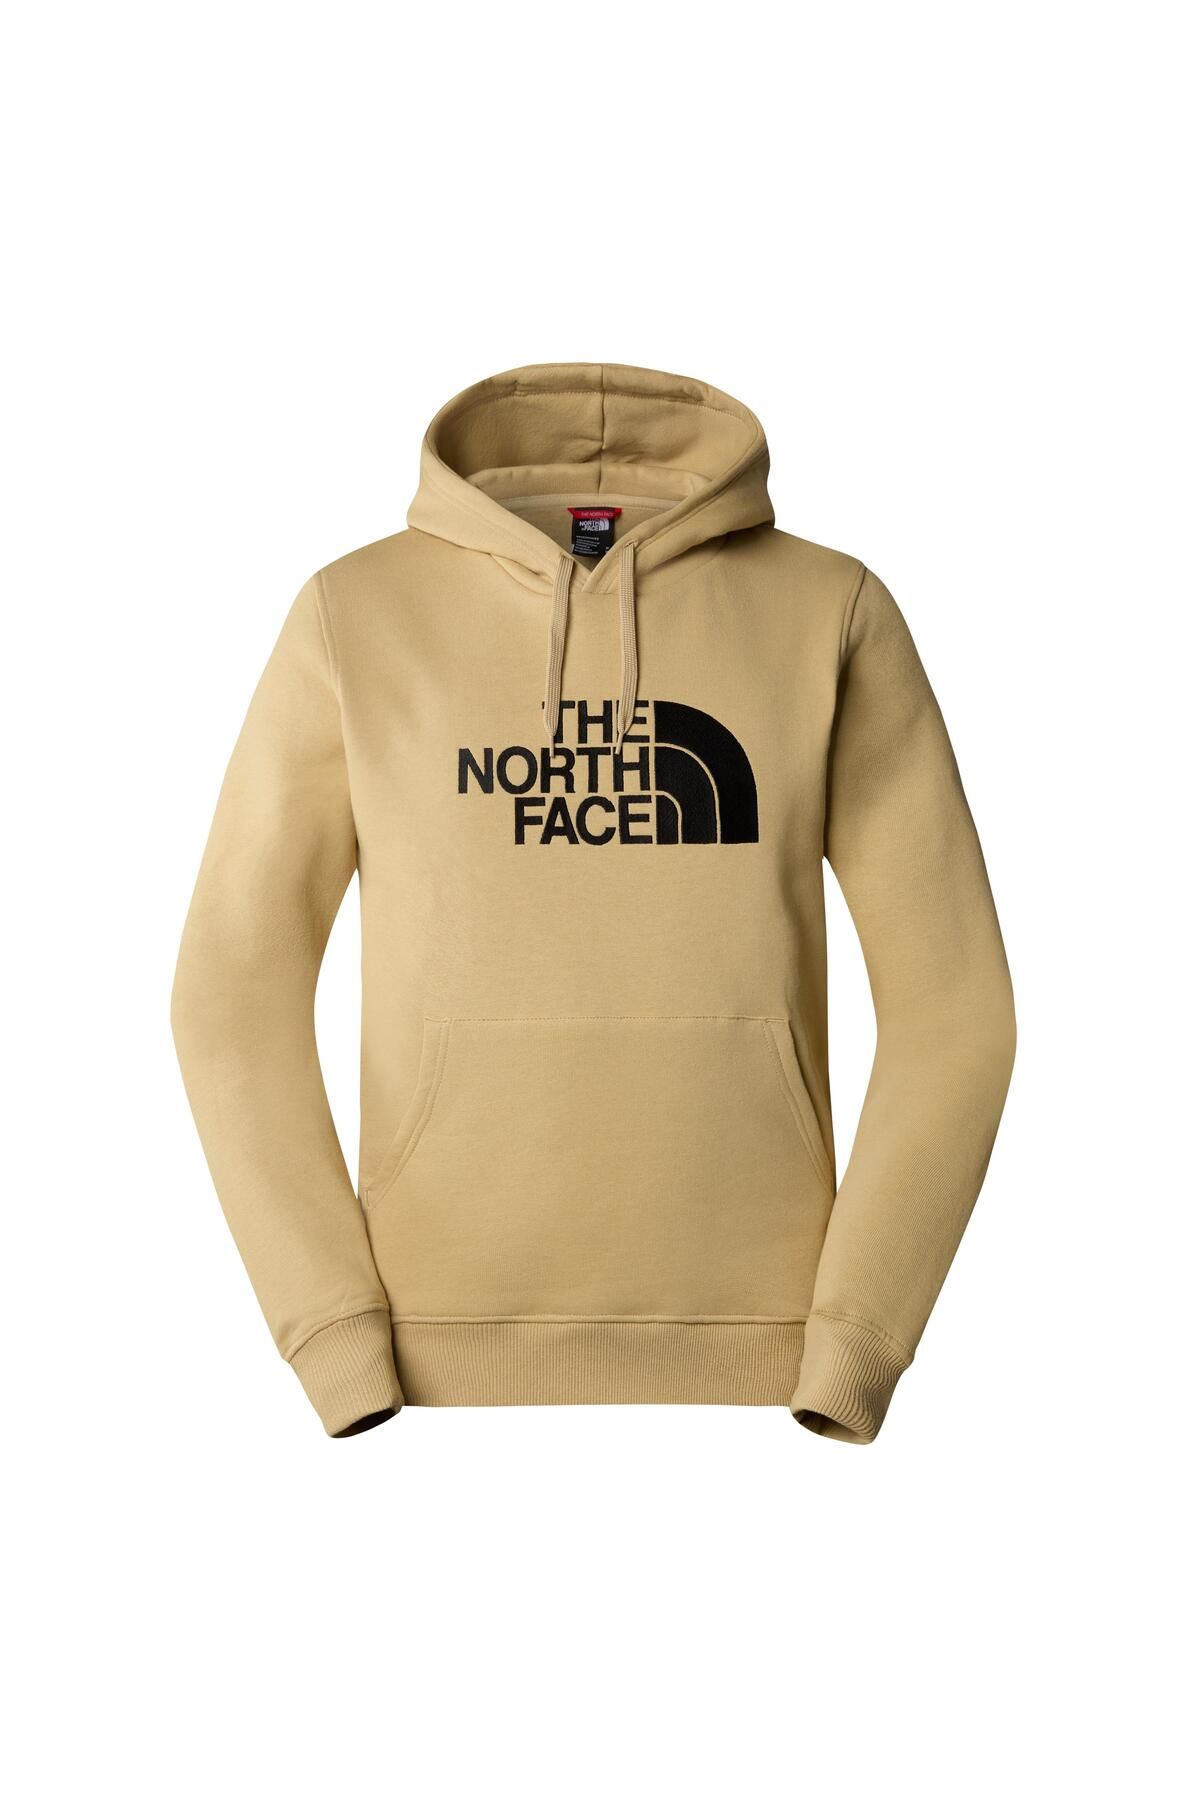 The North Face M Drew Peak Pullover Hoodie - Eu Erkek Sweatshirt